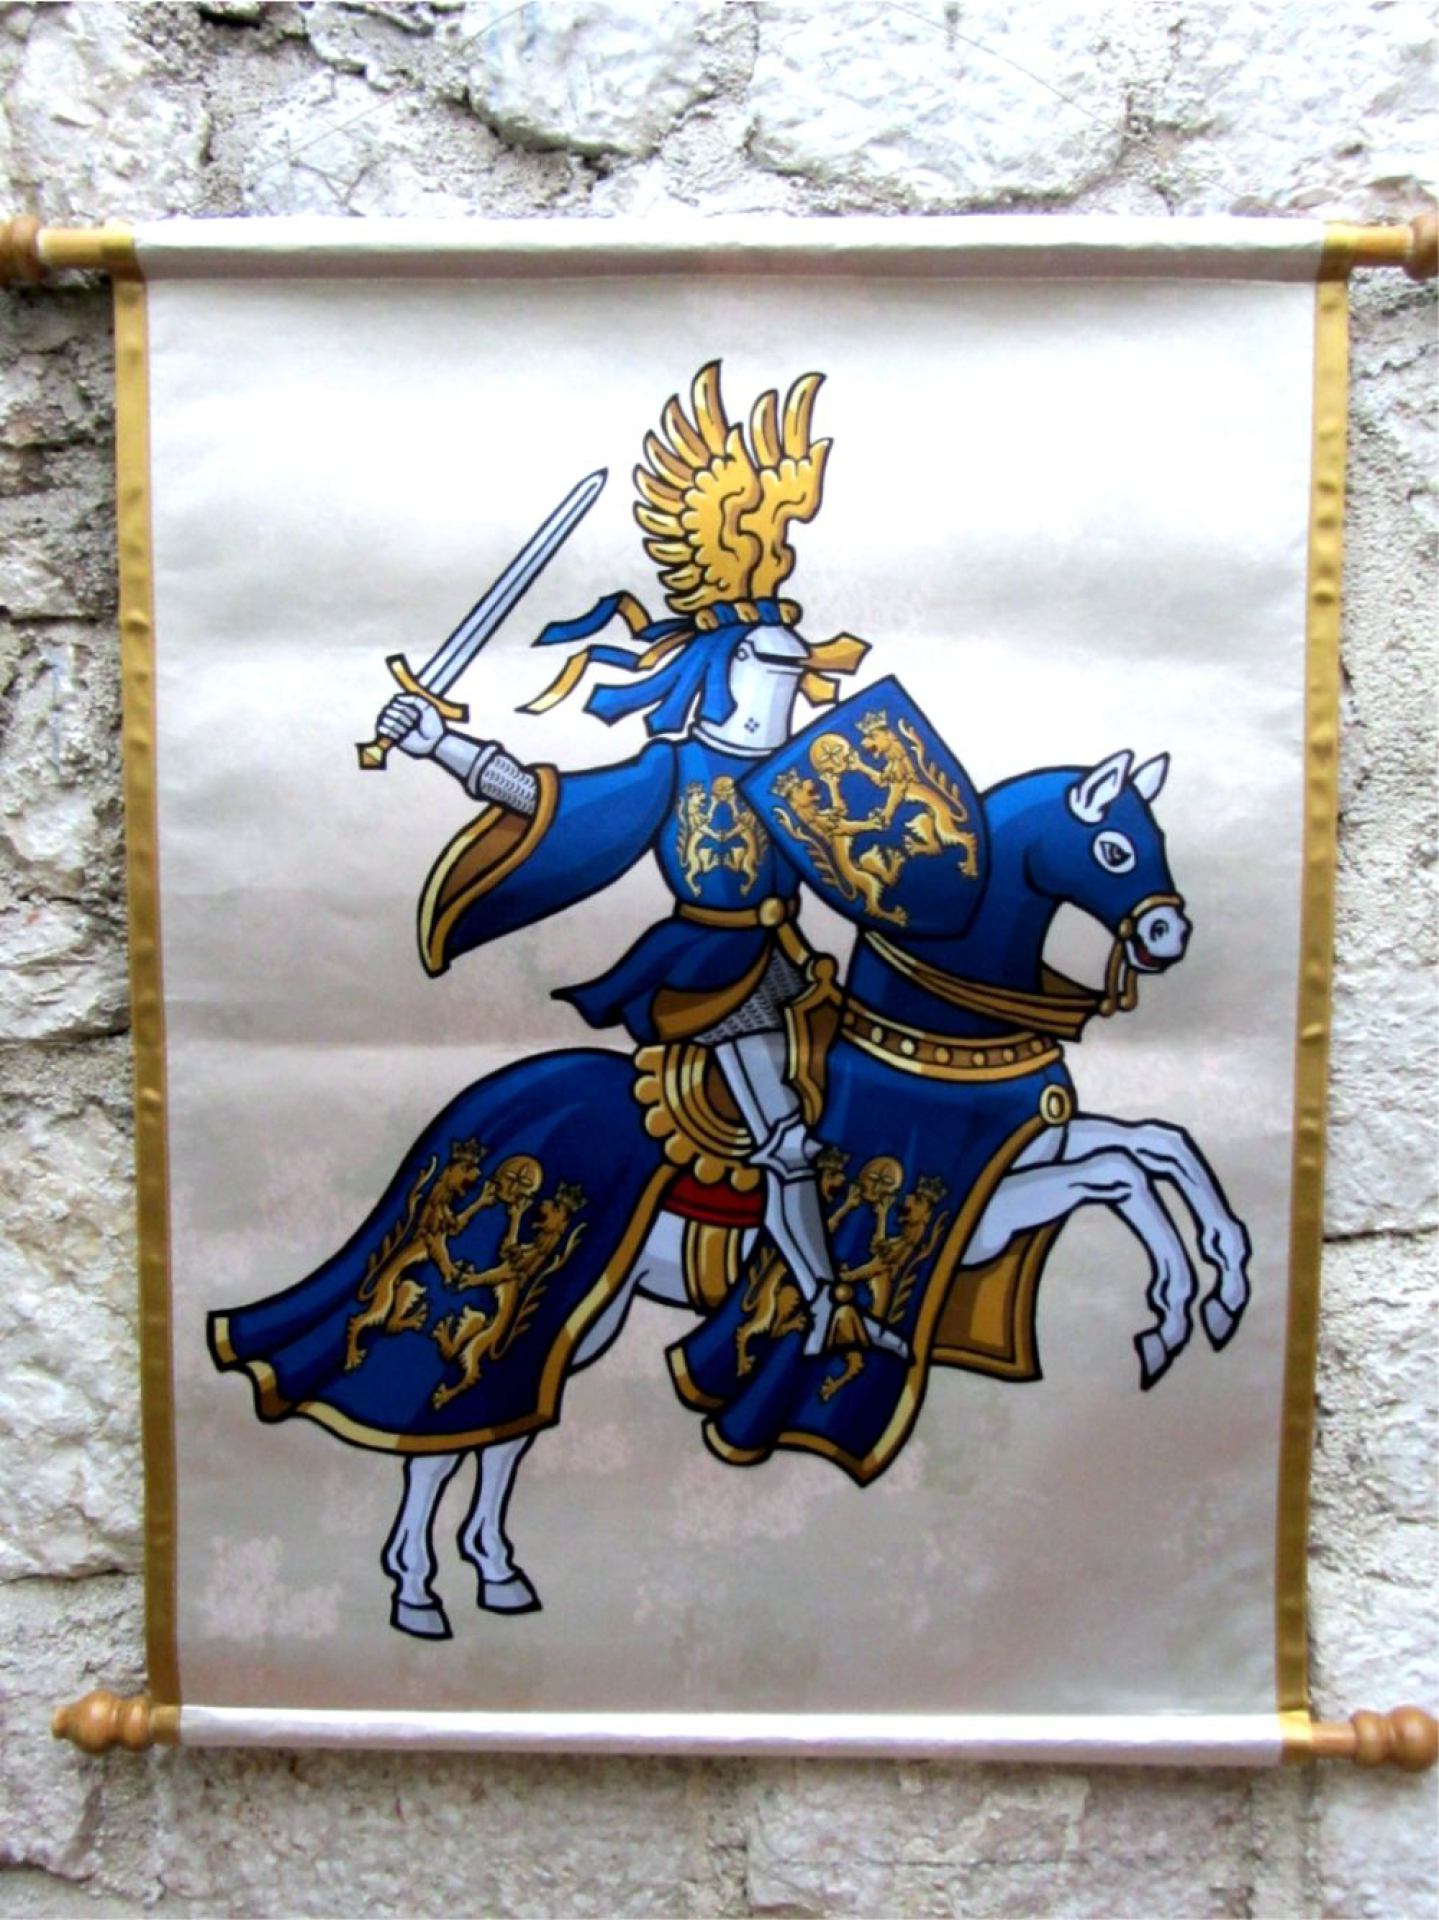 6-oruzje-i-heraldicki-rekviziti-9556643673.jpg